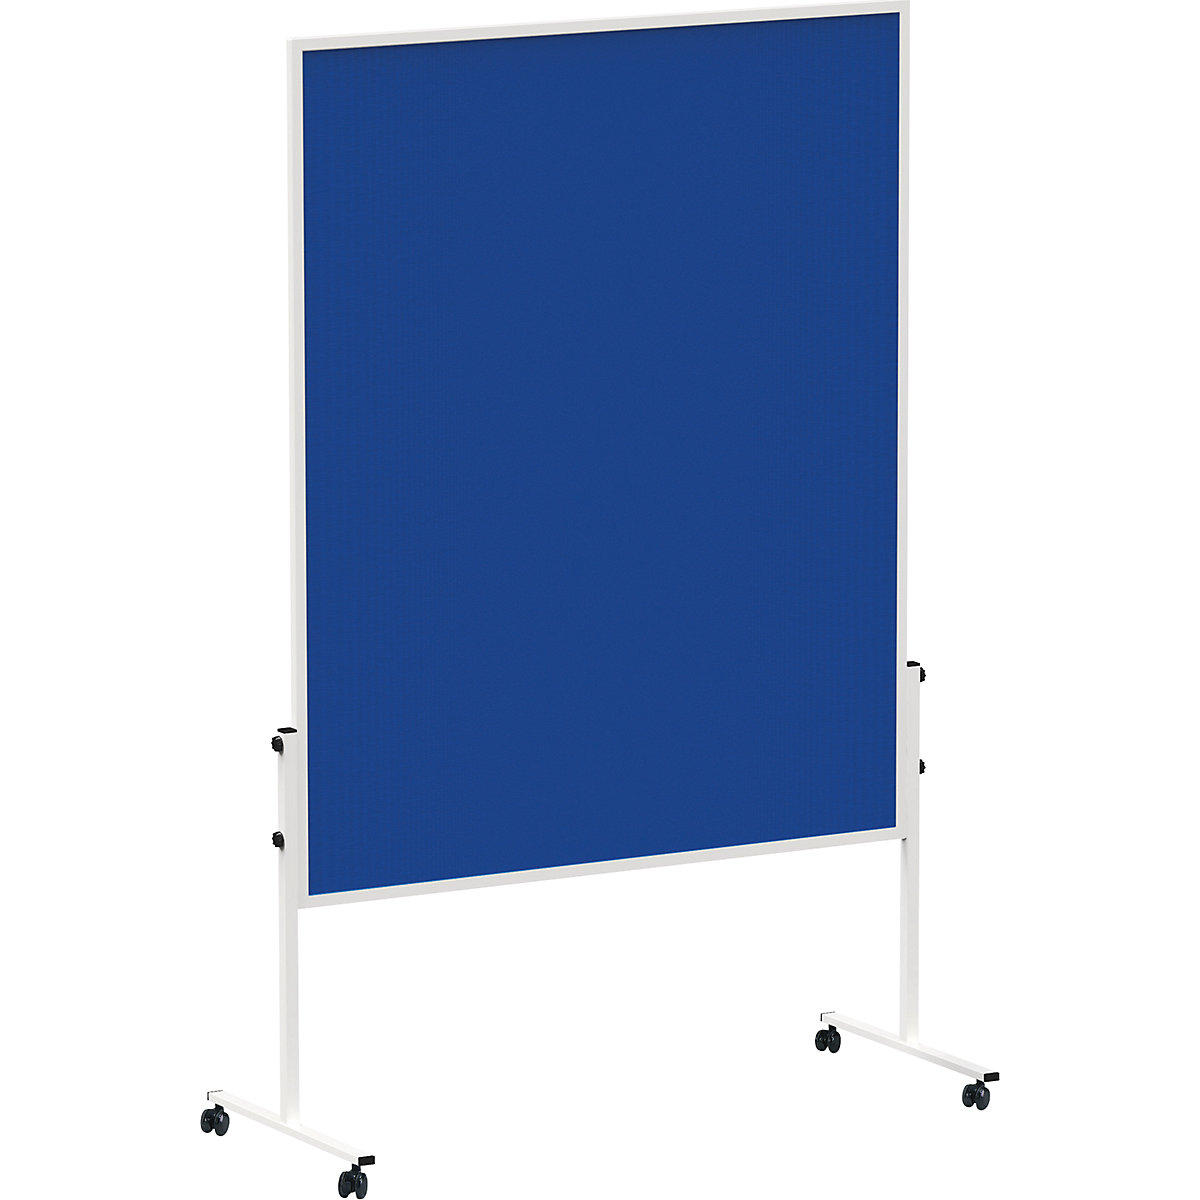 Lavagna per presentazioni MAULsolid – MAUL, con rotelle, colore feltro blu-1